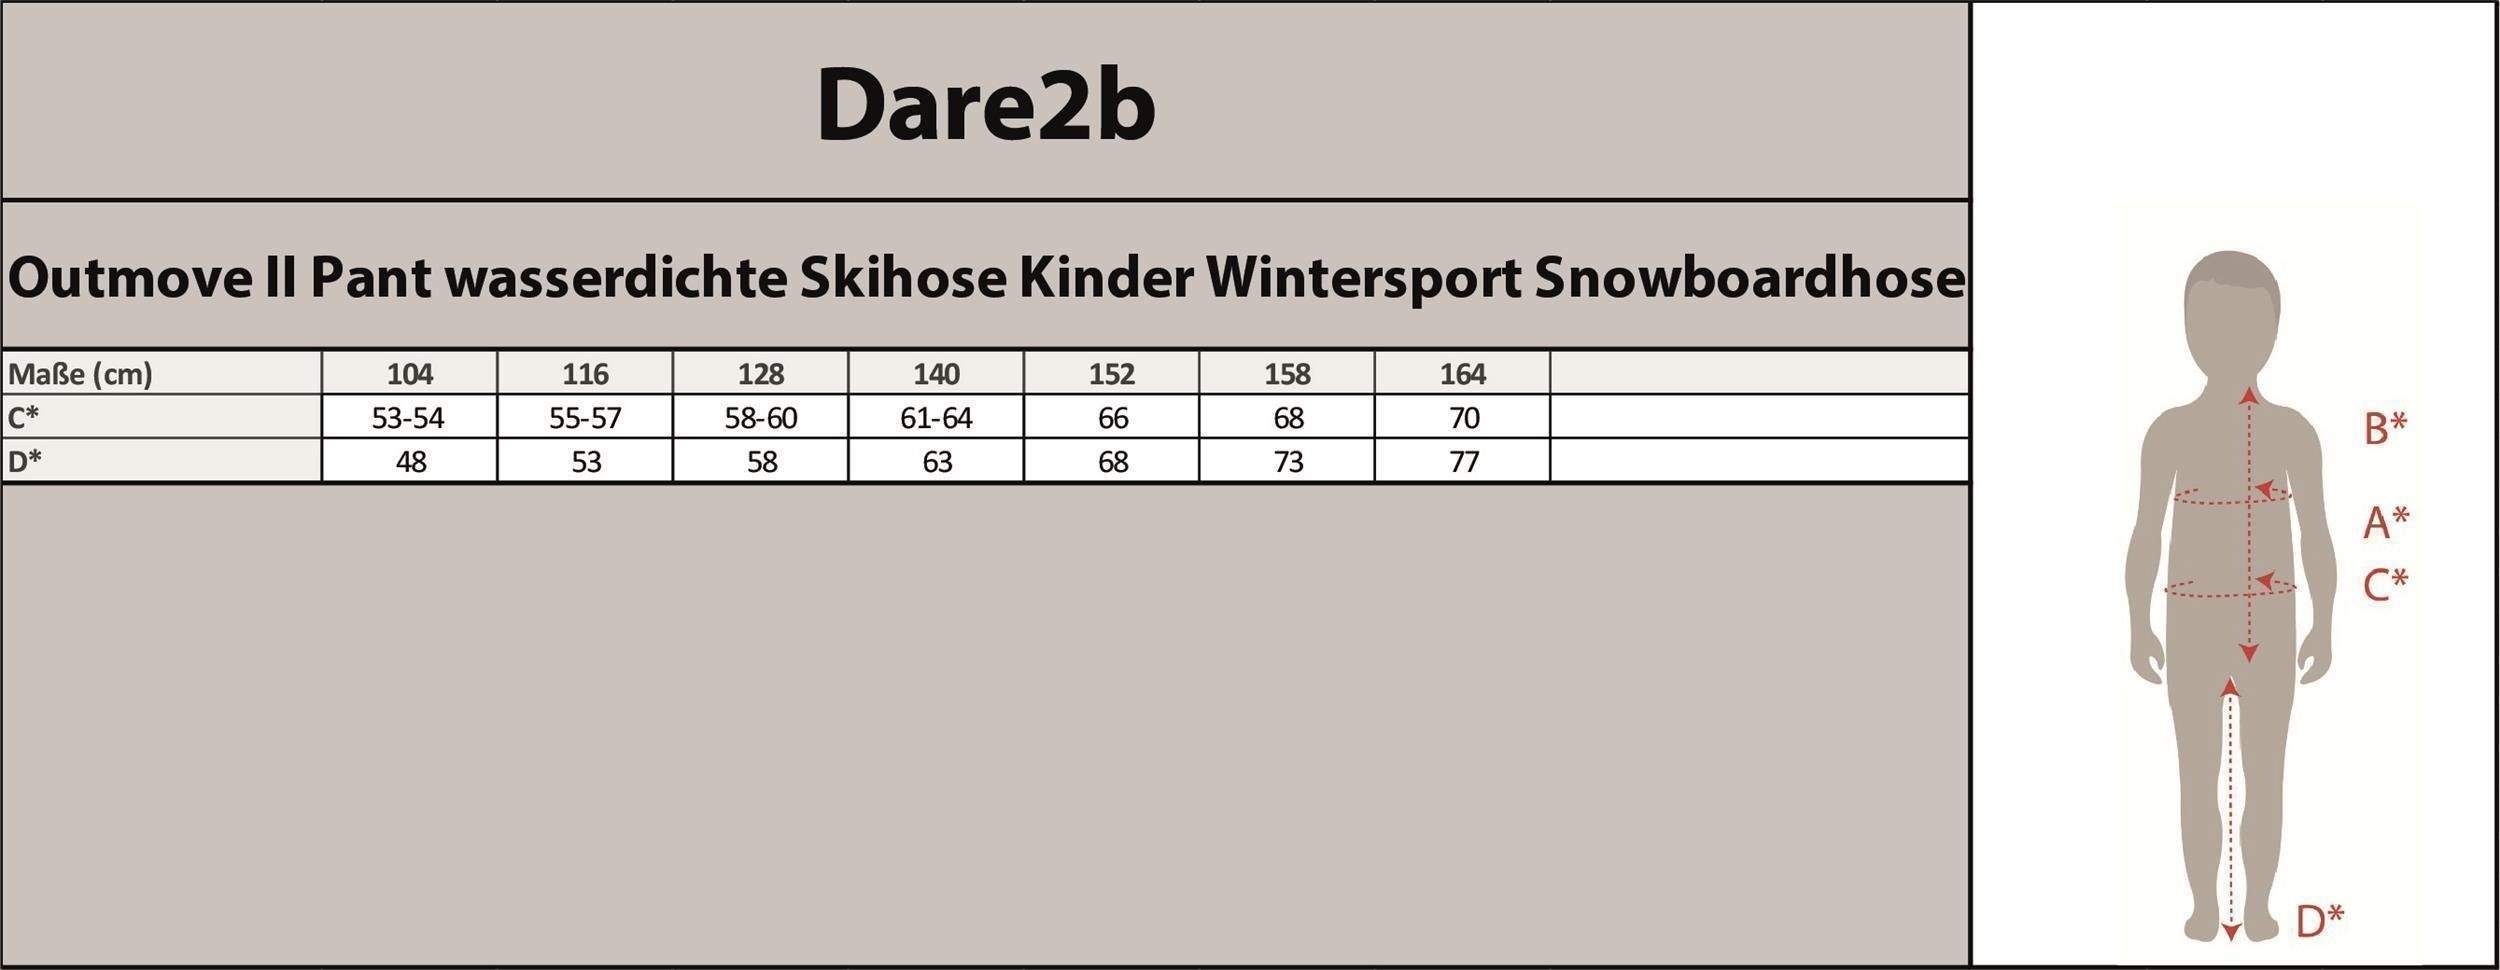 Black Snowboarden, Rodeln Schneehose Dare2b wasserdicht, Outmove für Kinder, II